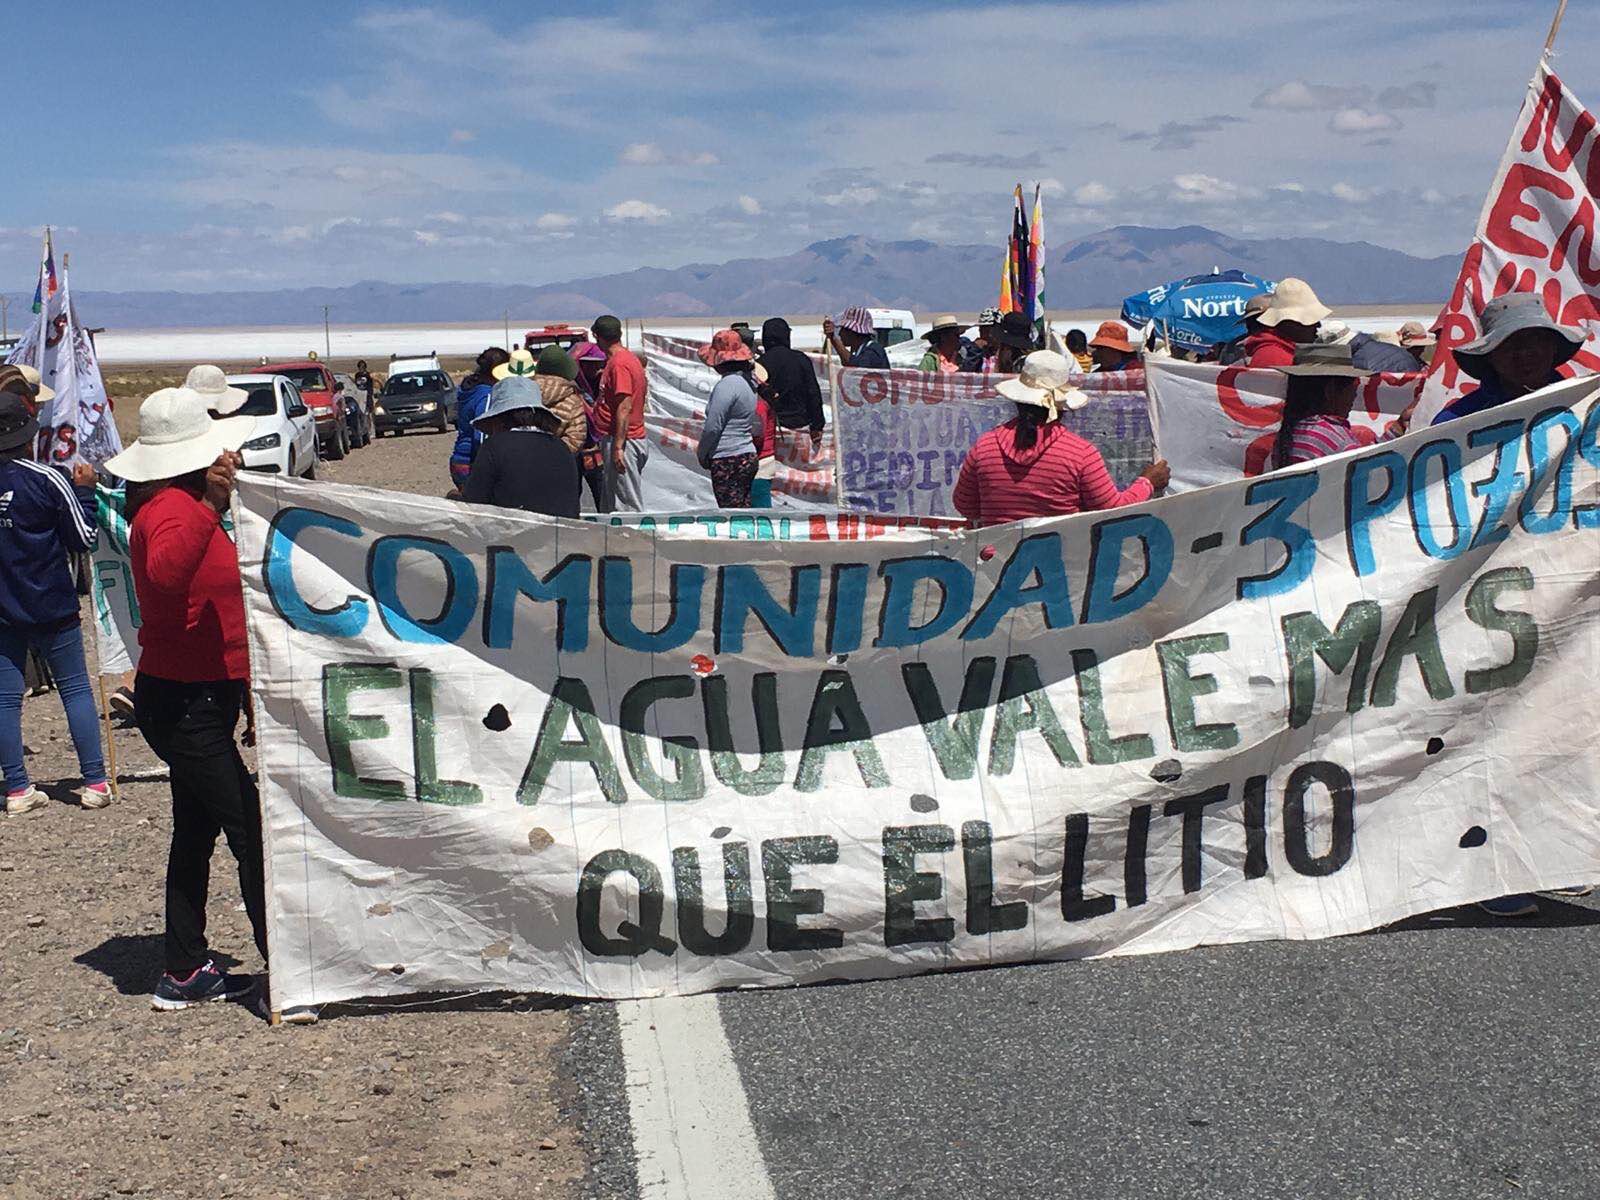 Comunidades protestam contra a mineração de lítio em Jujuy, Argentina, dizendo que a água é mais valiosa do que o lítio